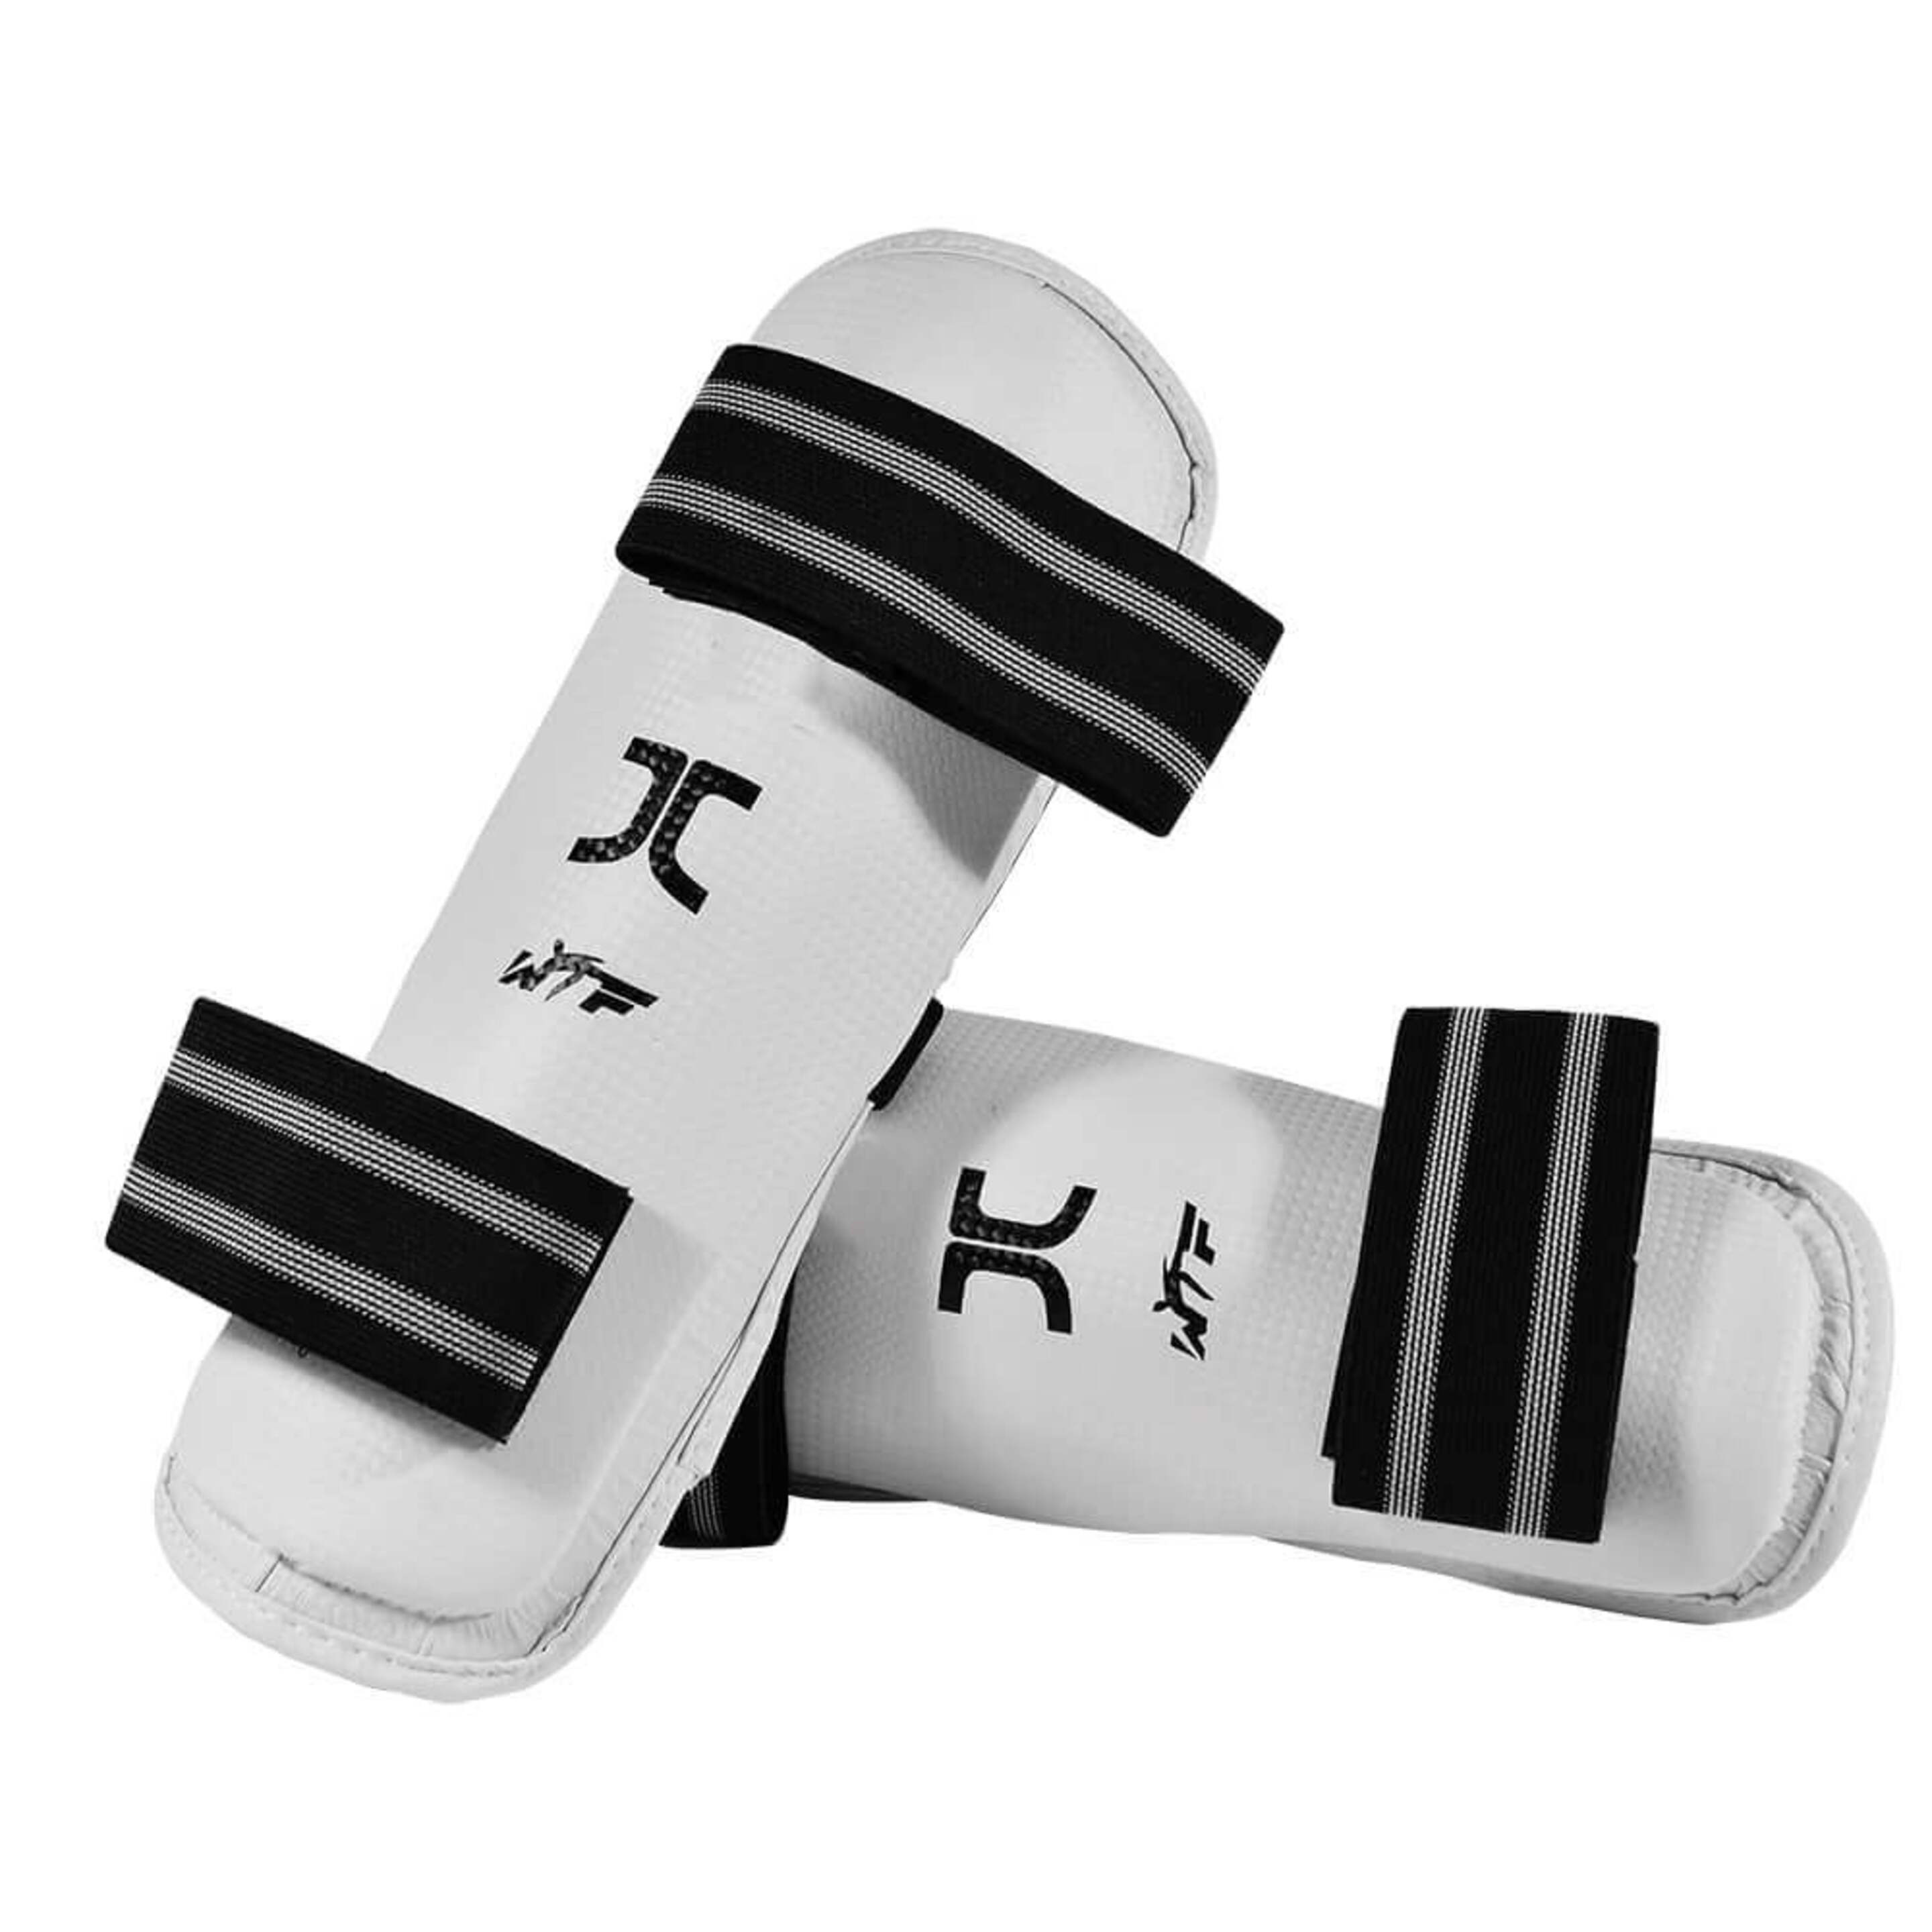 Espinilleras Para Taekwondo Jc - blanco - 